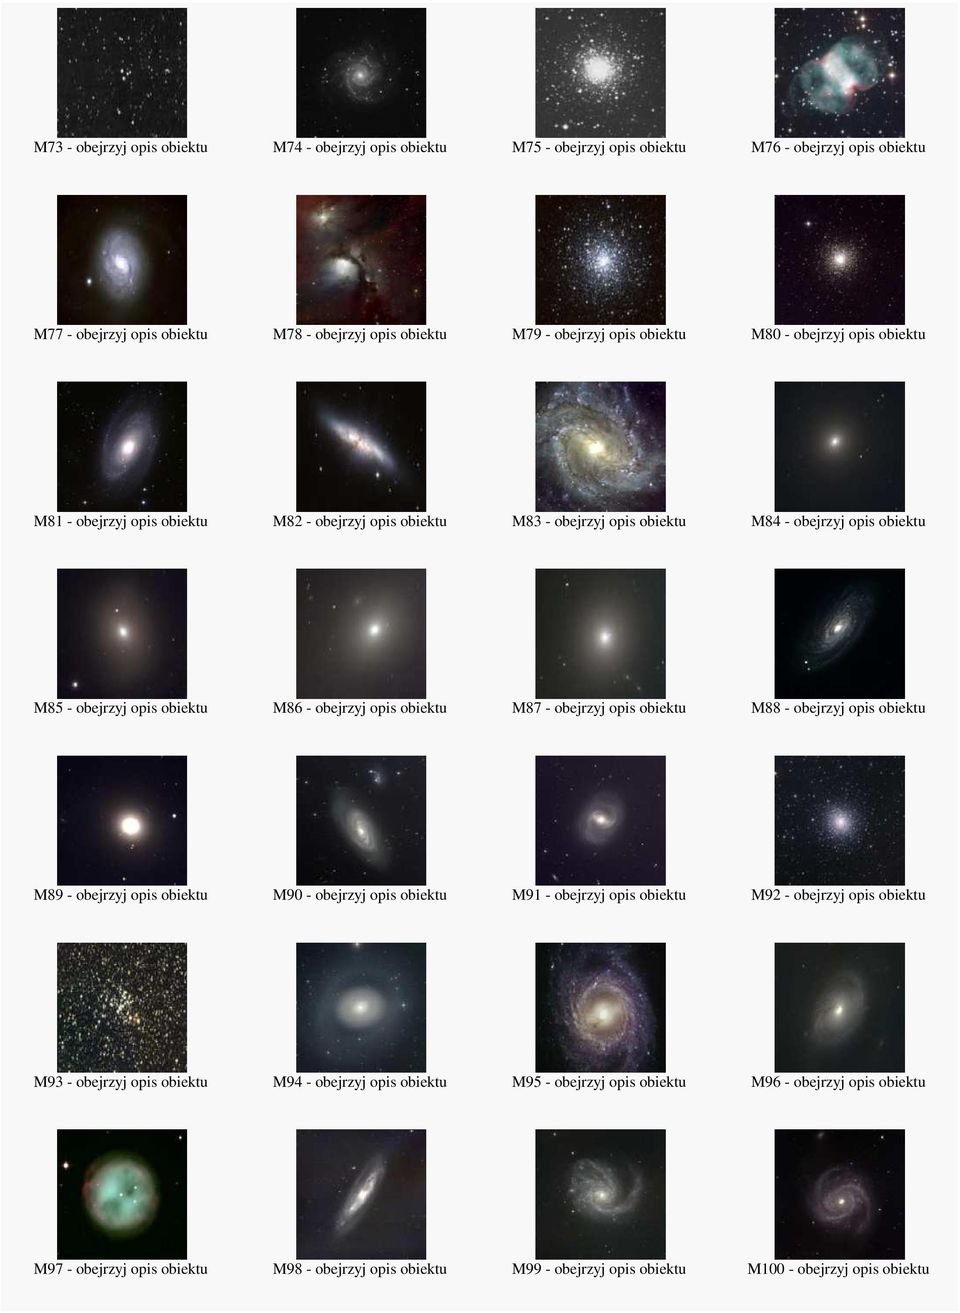 M87 - obejrzyj opis obiektu M88 - obejrzyj opis obiektu M89 - obejrzyj opis obiektu M90 - obejrzyj opis obiektu M91 - obejrzyj opis obiektu M92 - obejrzyj opis obiektu M93 - obejrzyj opis obiektu